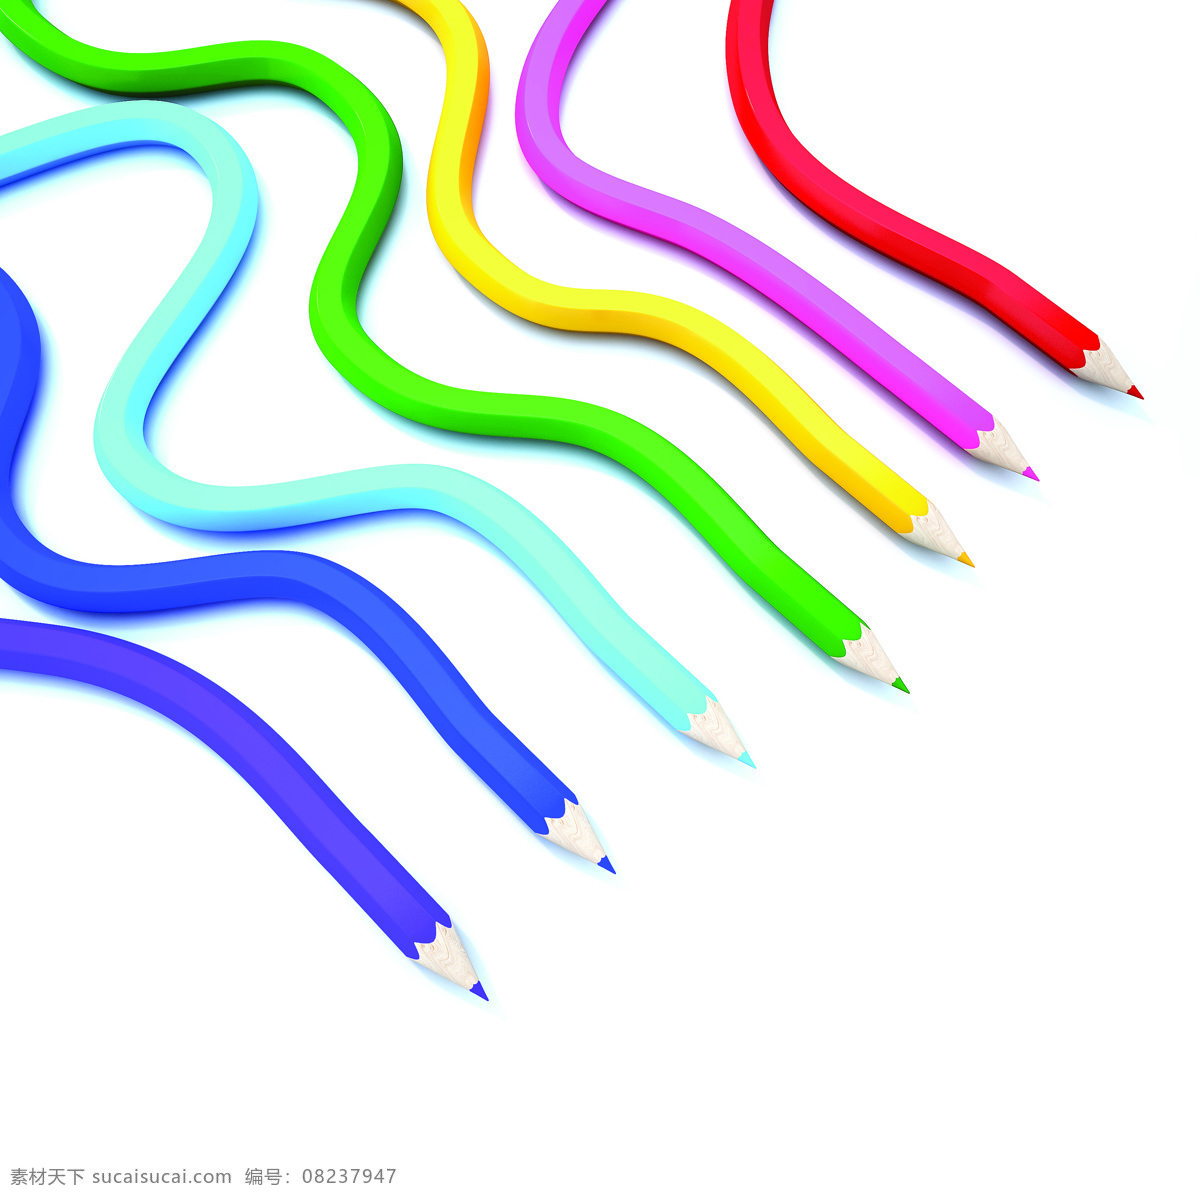 创意 铅笔 设计素材 铅笔设计 彩色铅笔 颜色 色彩 彩色 广告素材 底纹背景 办公学习 生活百科 白色